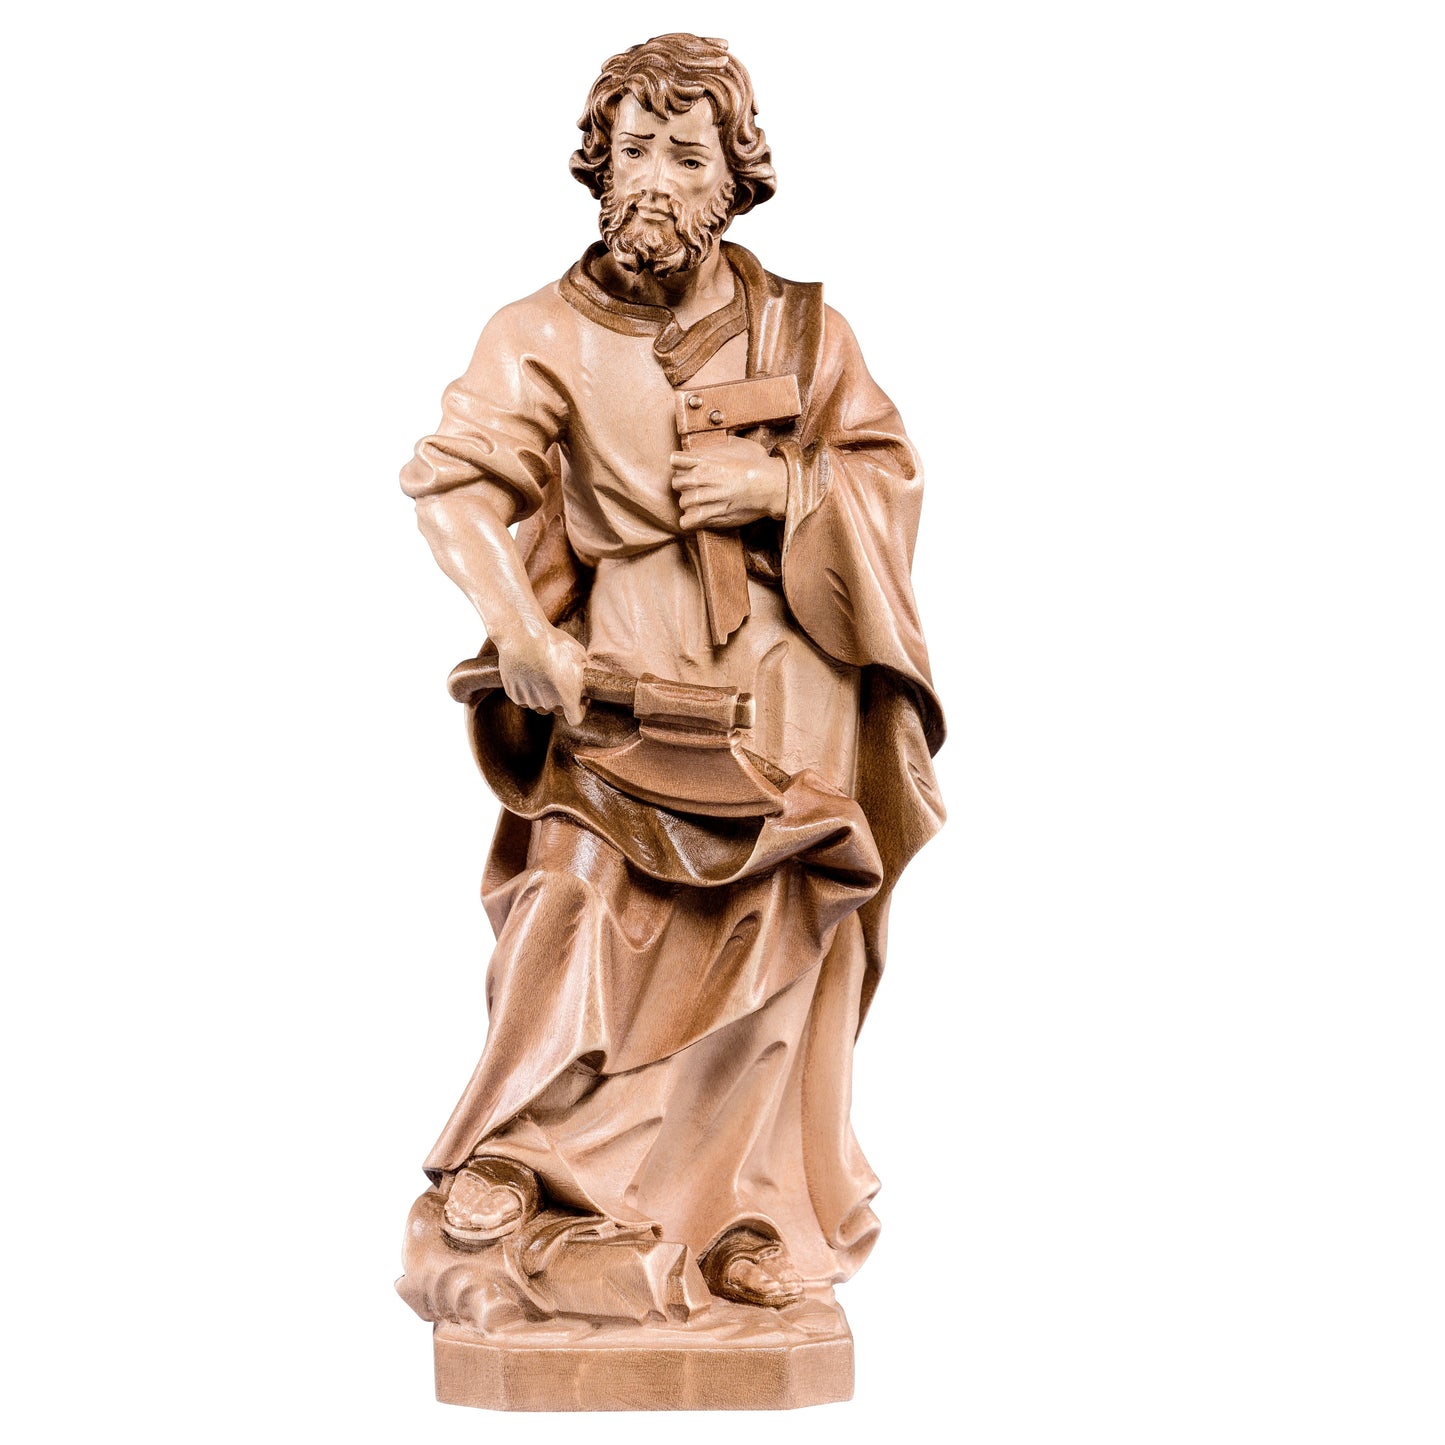 Mondo Cattolico Glossy / 10 cm (3.9 in) Wooden statue of St. Joseph the carpenter